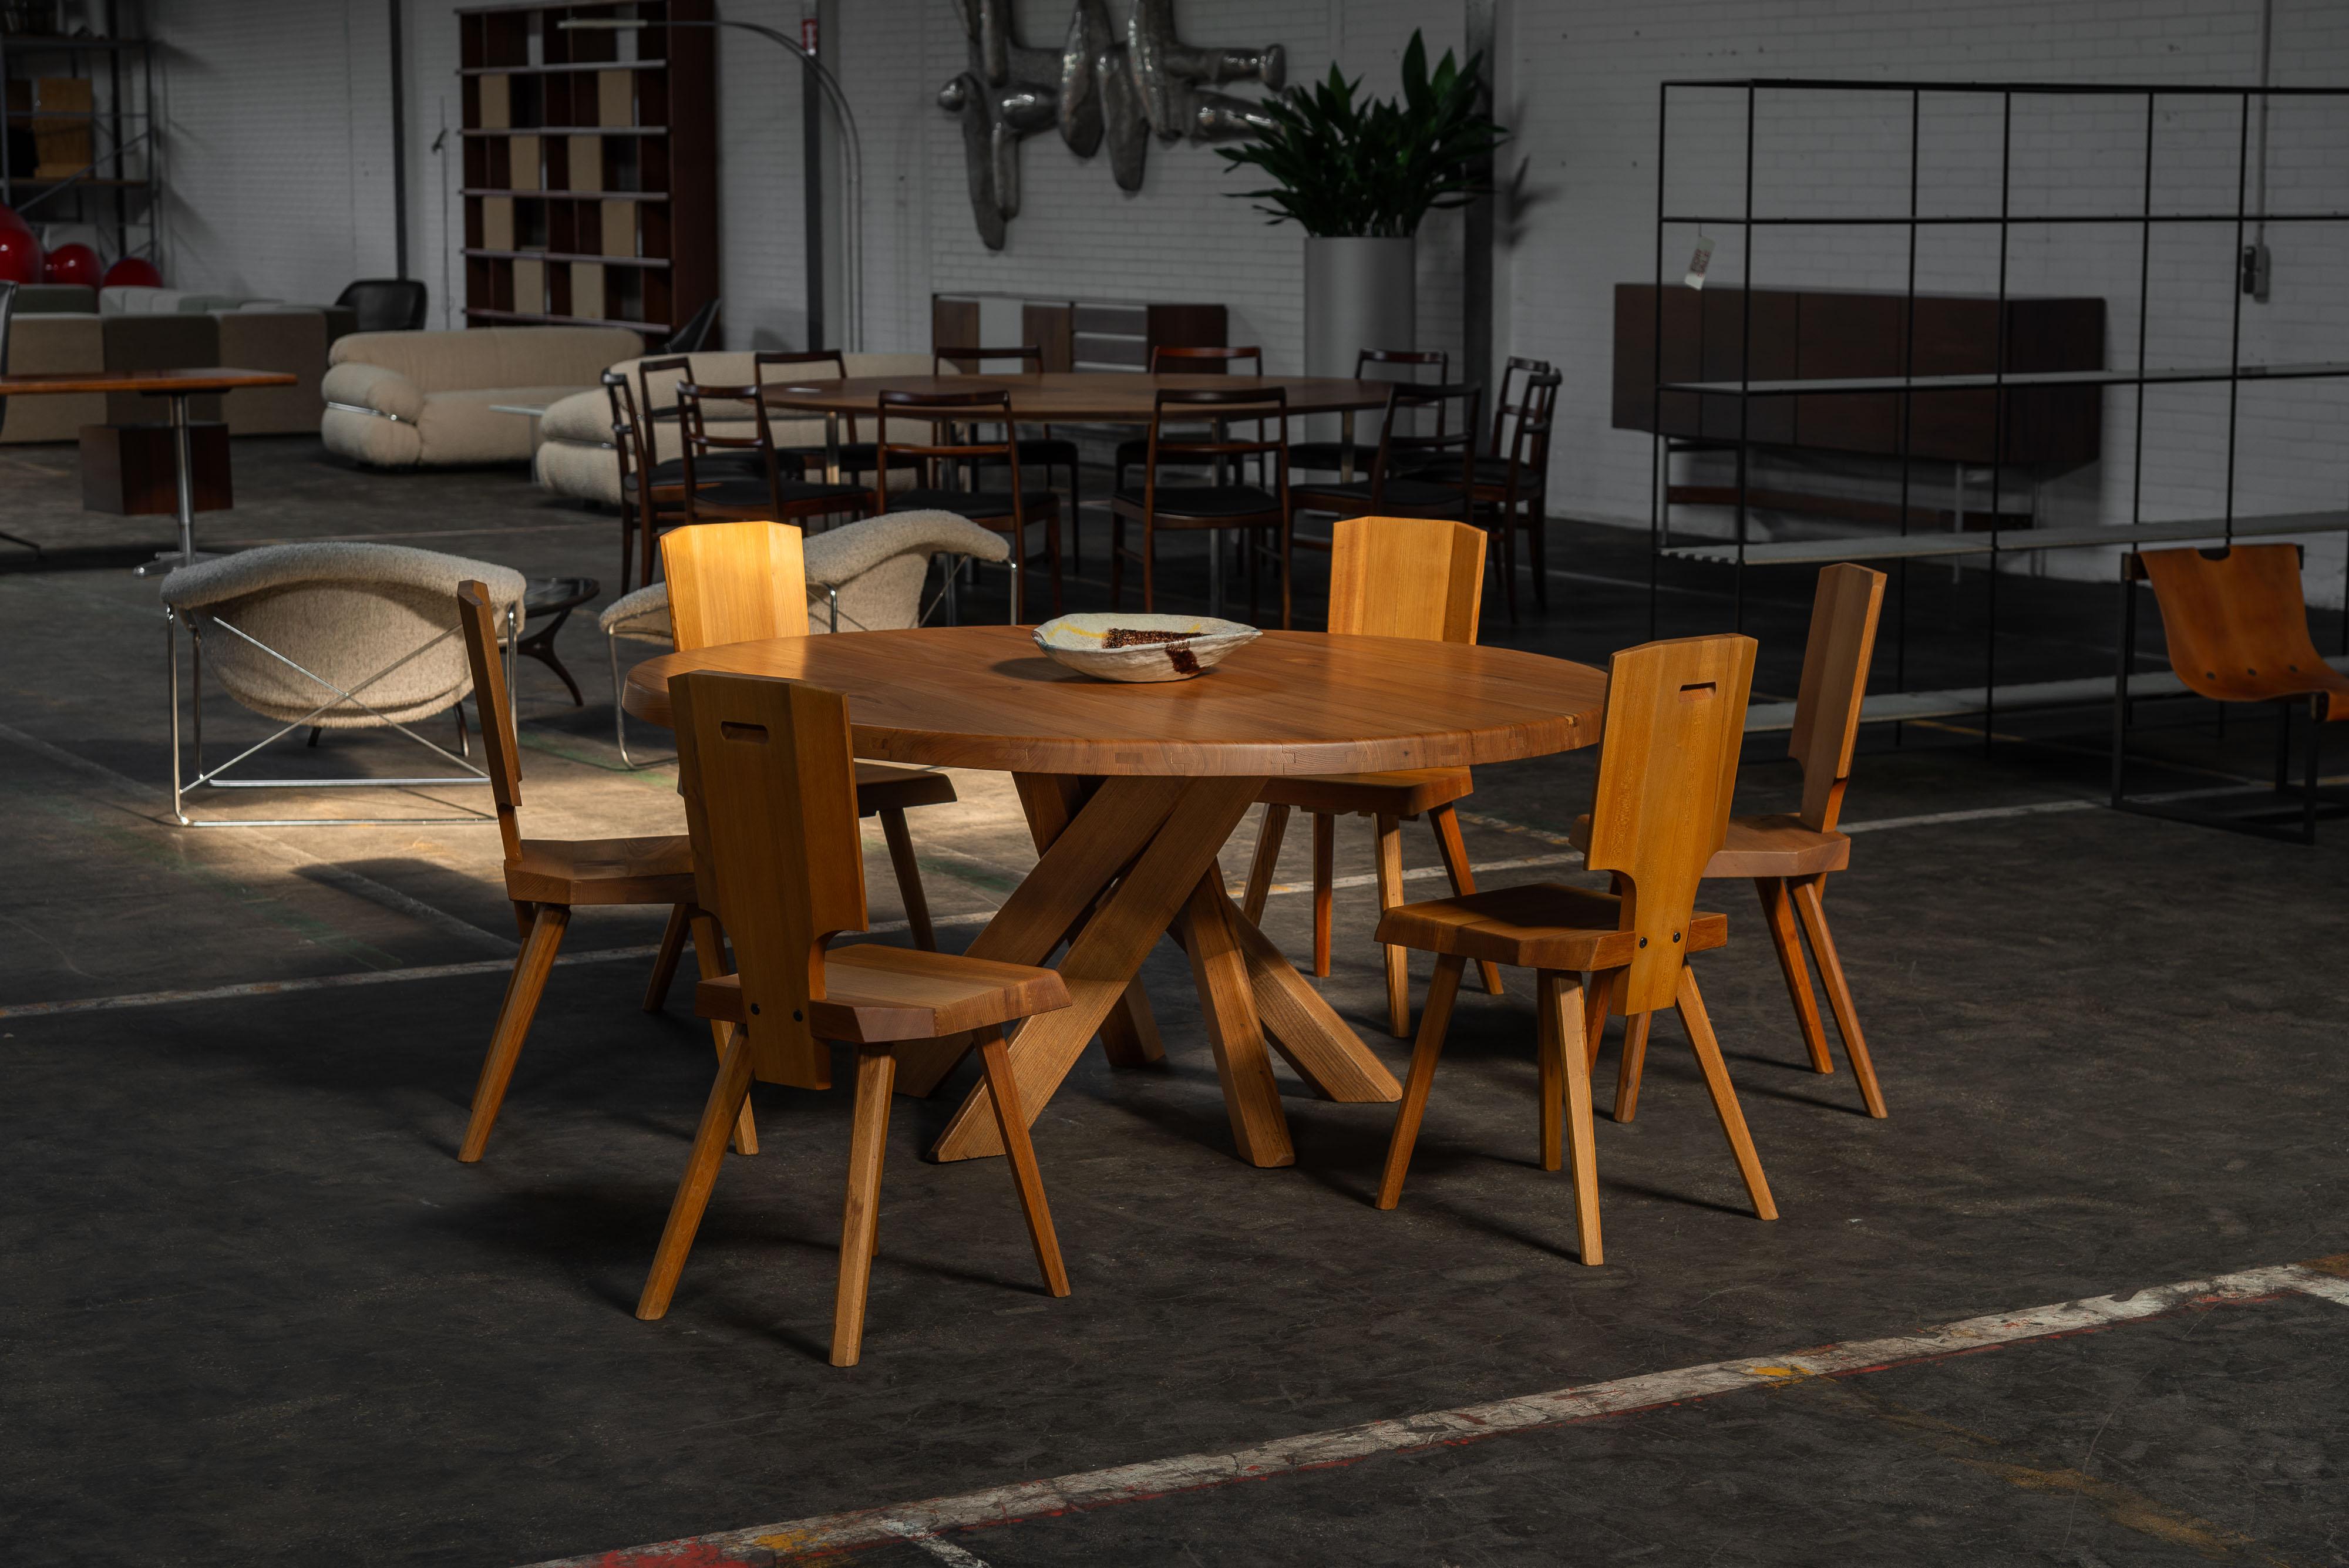 Cette magnifique table de salle à manger T21E de 1965, créée par Pierre Chapo, illustre le style et le savoir-faire de Chapo. Fabriqué avec la plus grande attention aux détails, le T21D présente une structure en bois d'orme massif, mettant en valeur